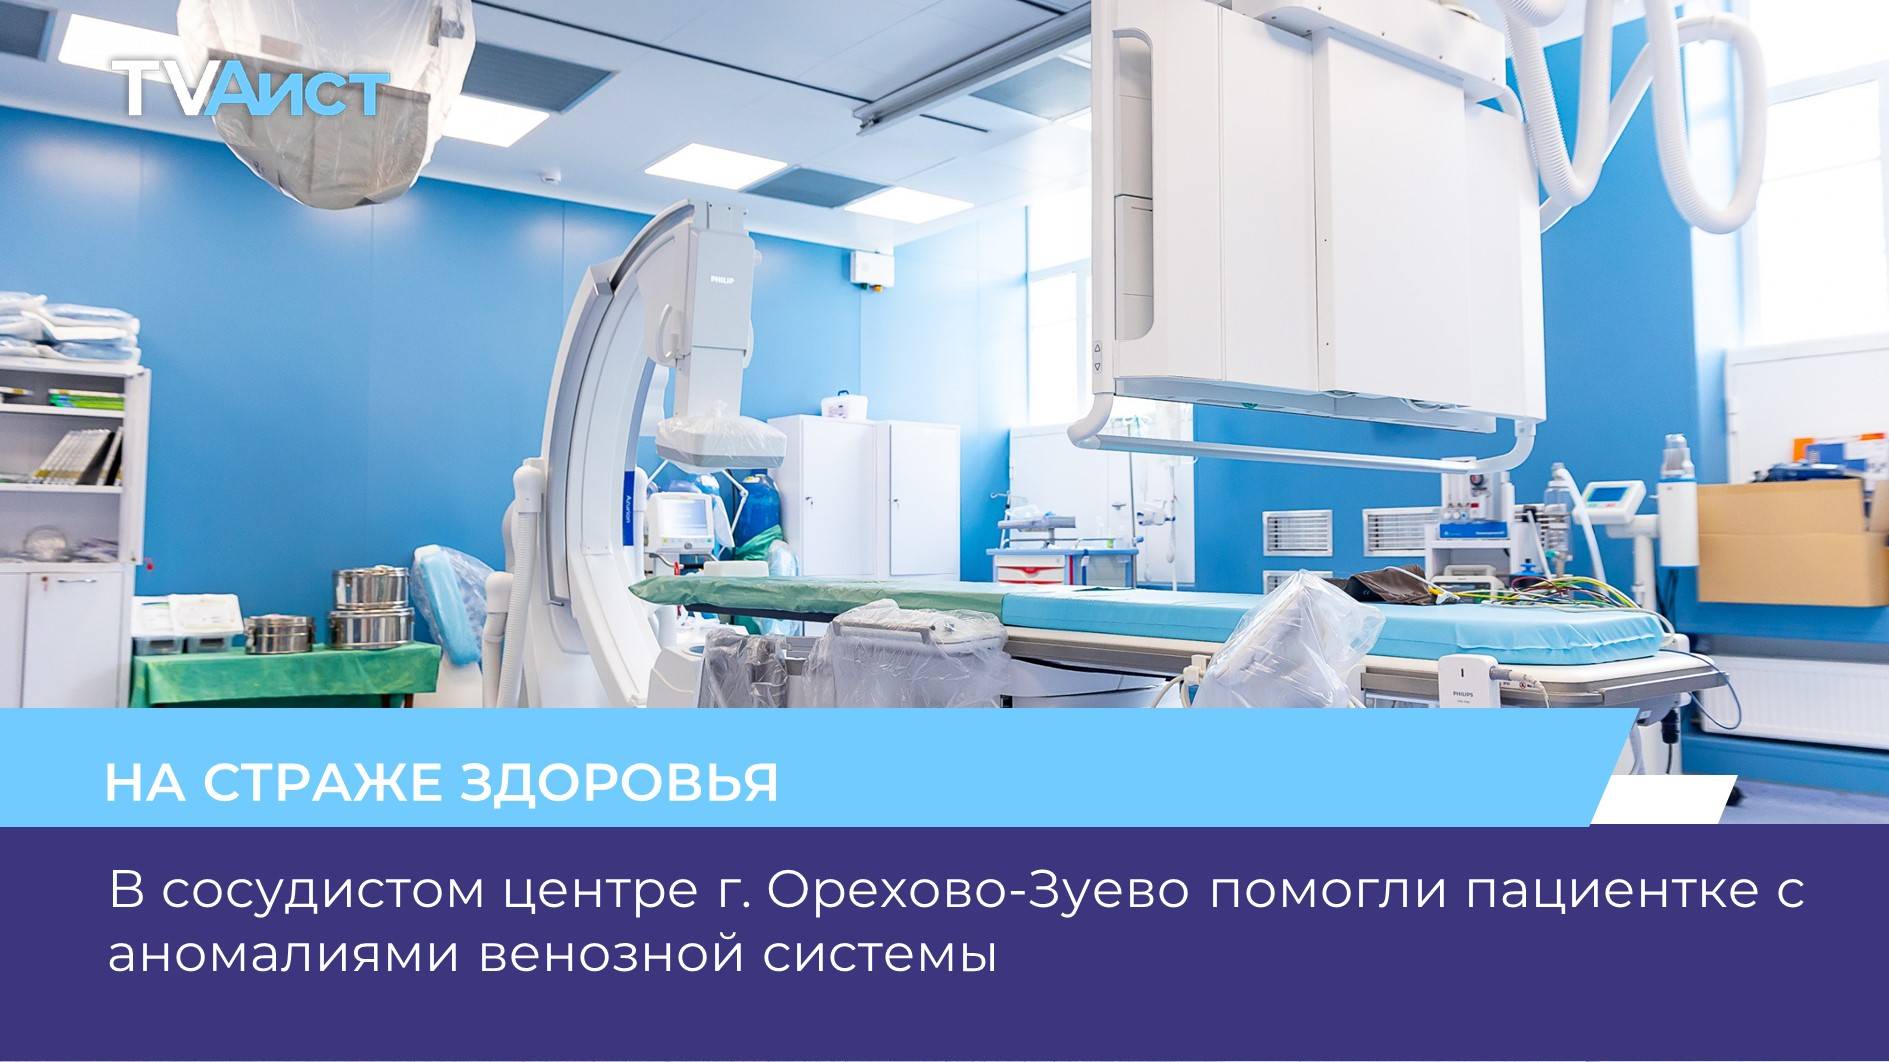 В сосудистом центре г. Орехово-Зуево помогли пациентке с аномалиями венозной системы